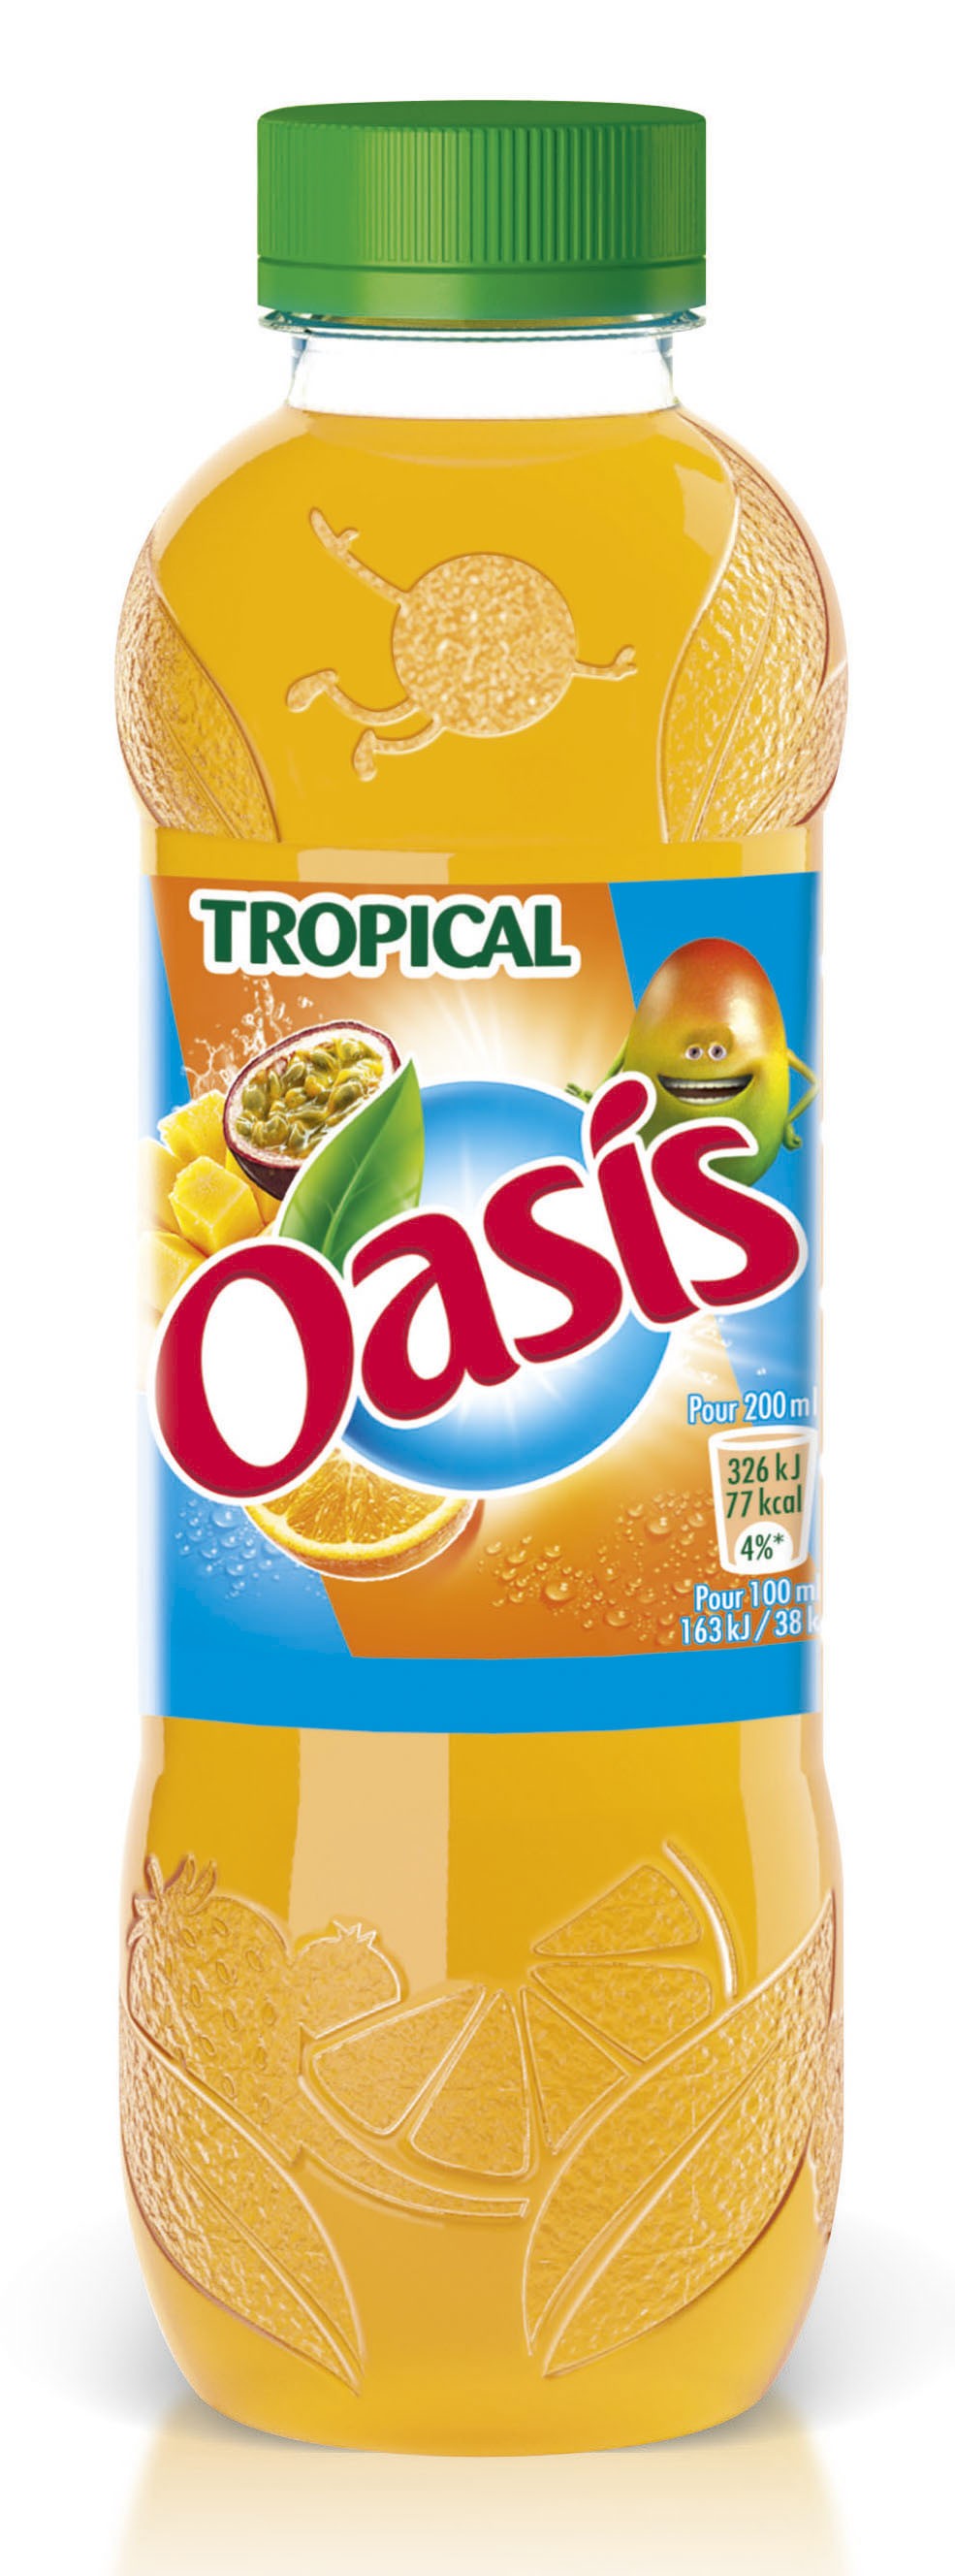 Oasis Tropical Pet50 X24 pas cher